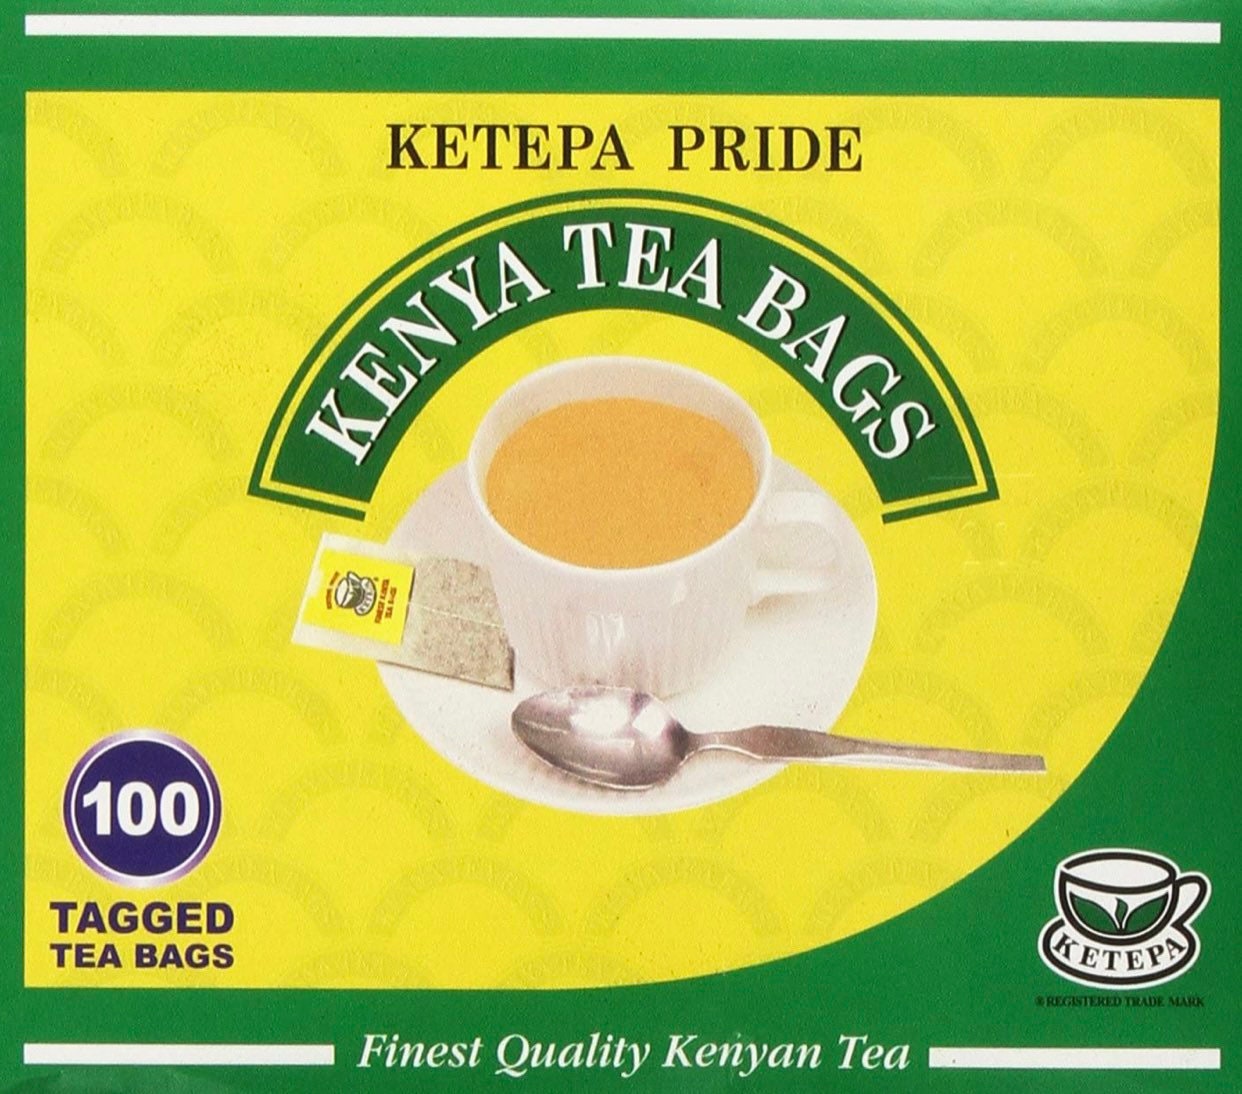 Ketepa Kenya Tea - Ketapa Pride Tea Bags